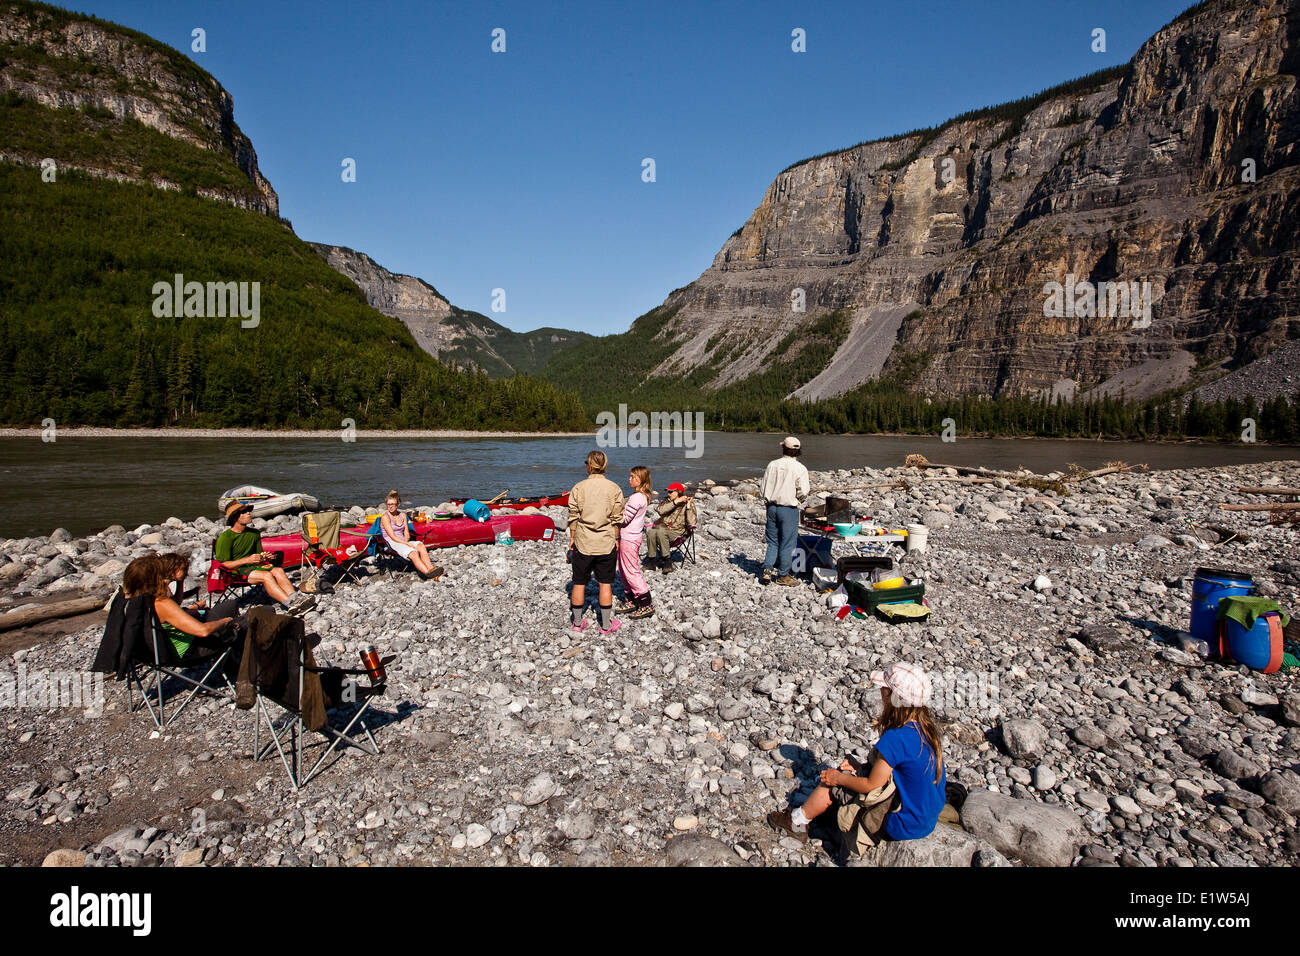 Groupe de personnes qui campaient sur la rivière Nahanni, la réserve de parc national Nahanni, Territoires du Nord-Ouest, préserver le Canada. Banque D'Images